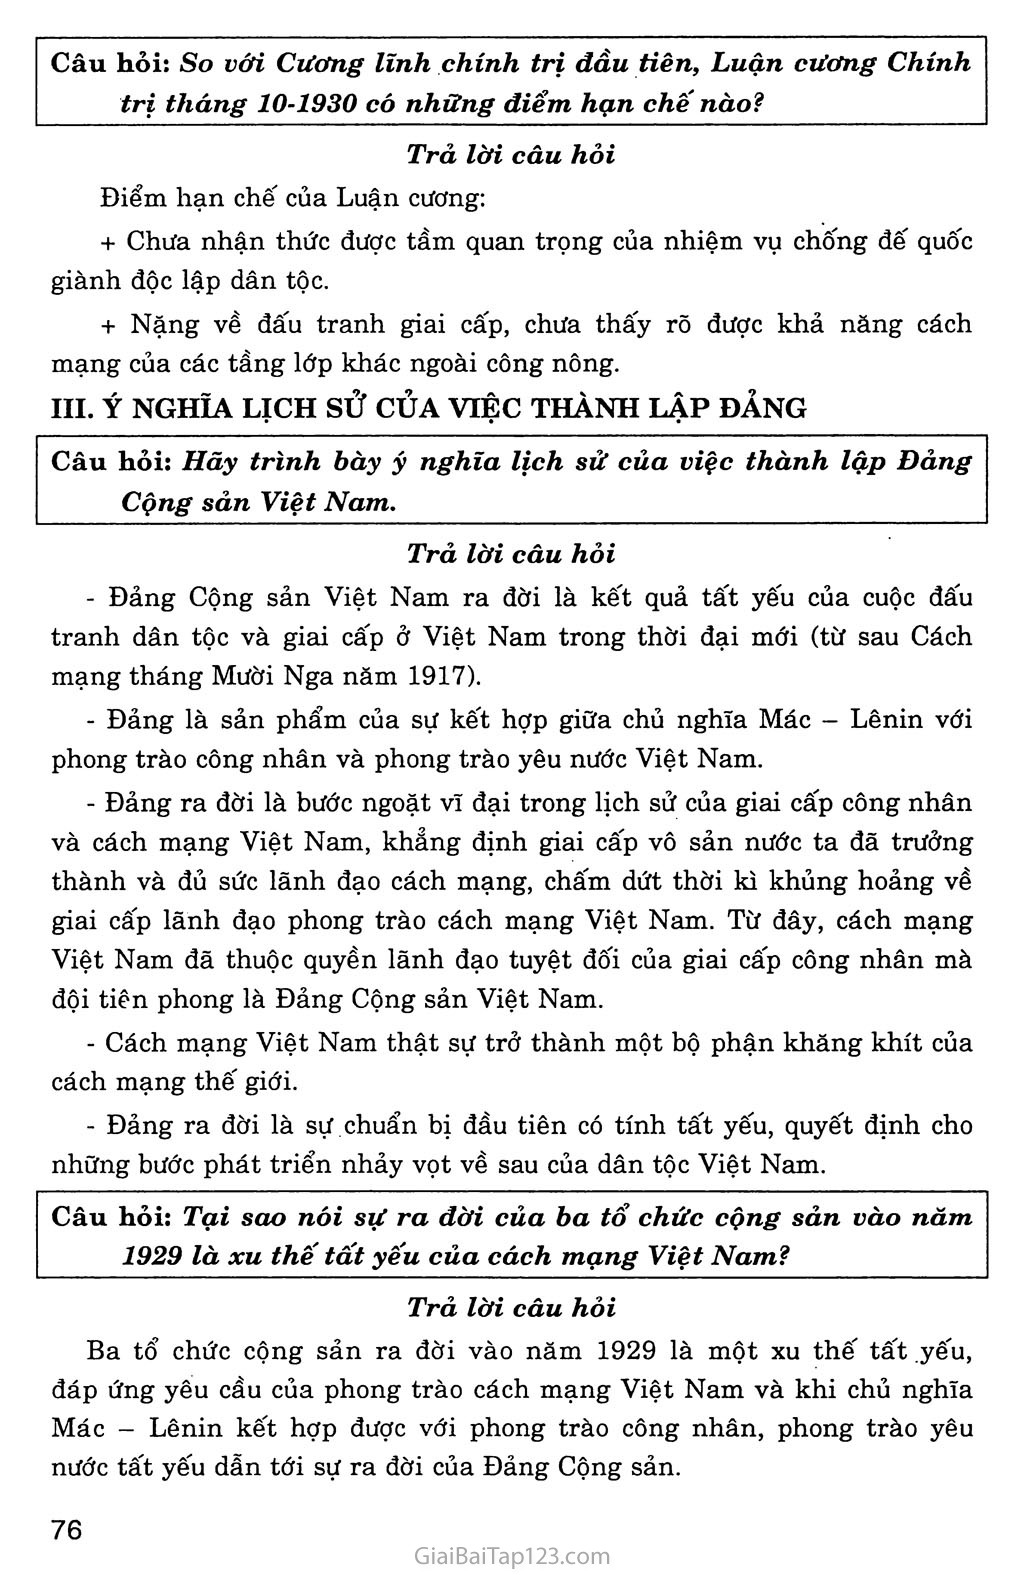 Bài 18: Đảng Cộng sản Việt Nam ra đời trang 4